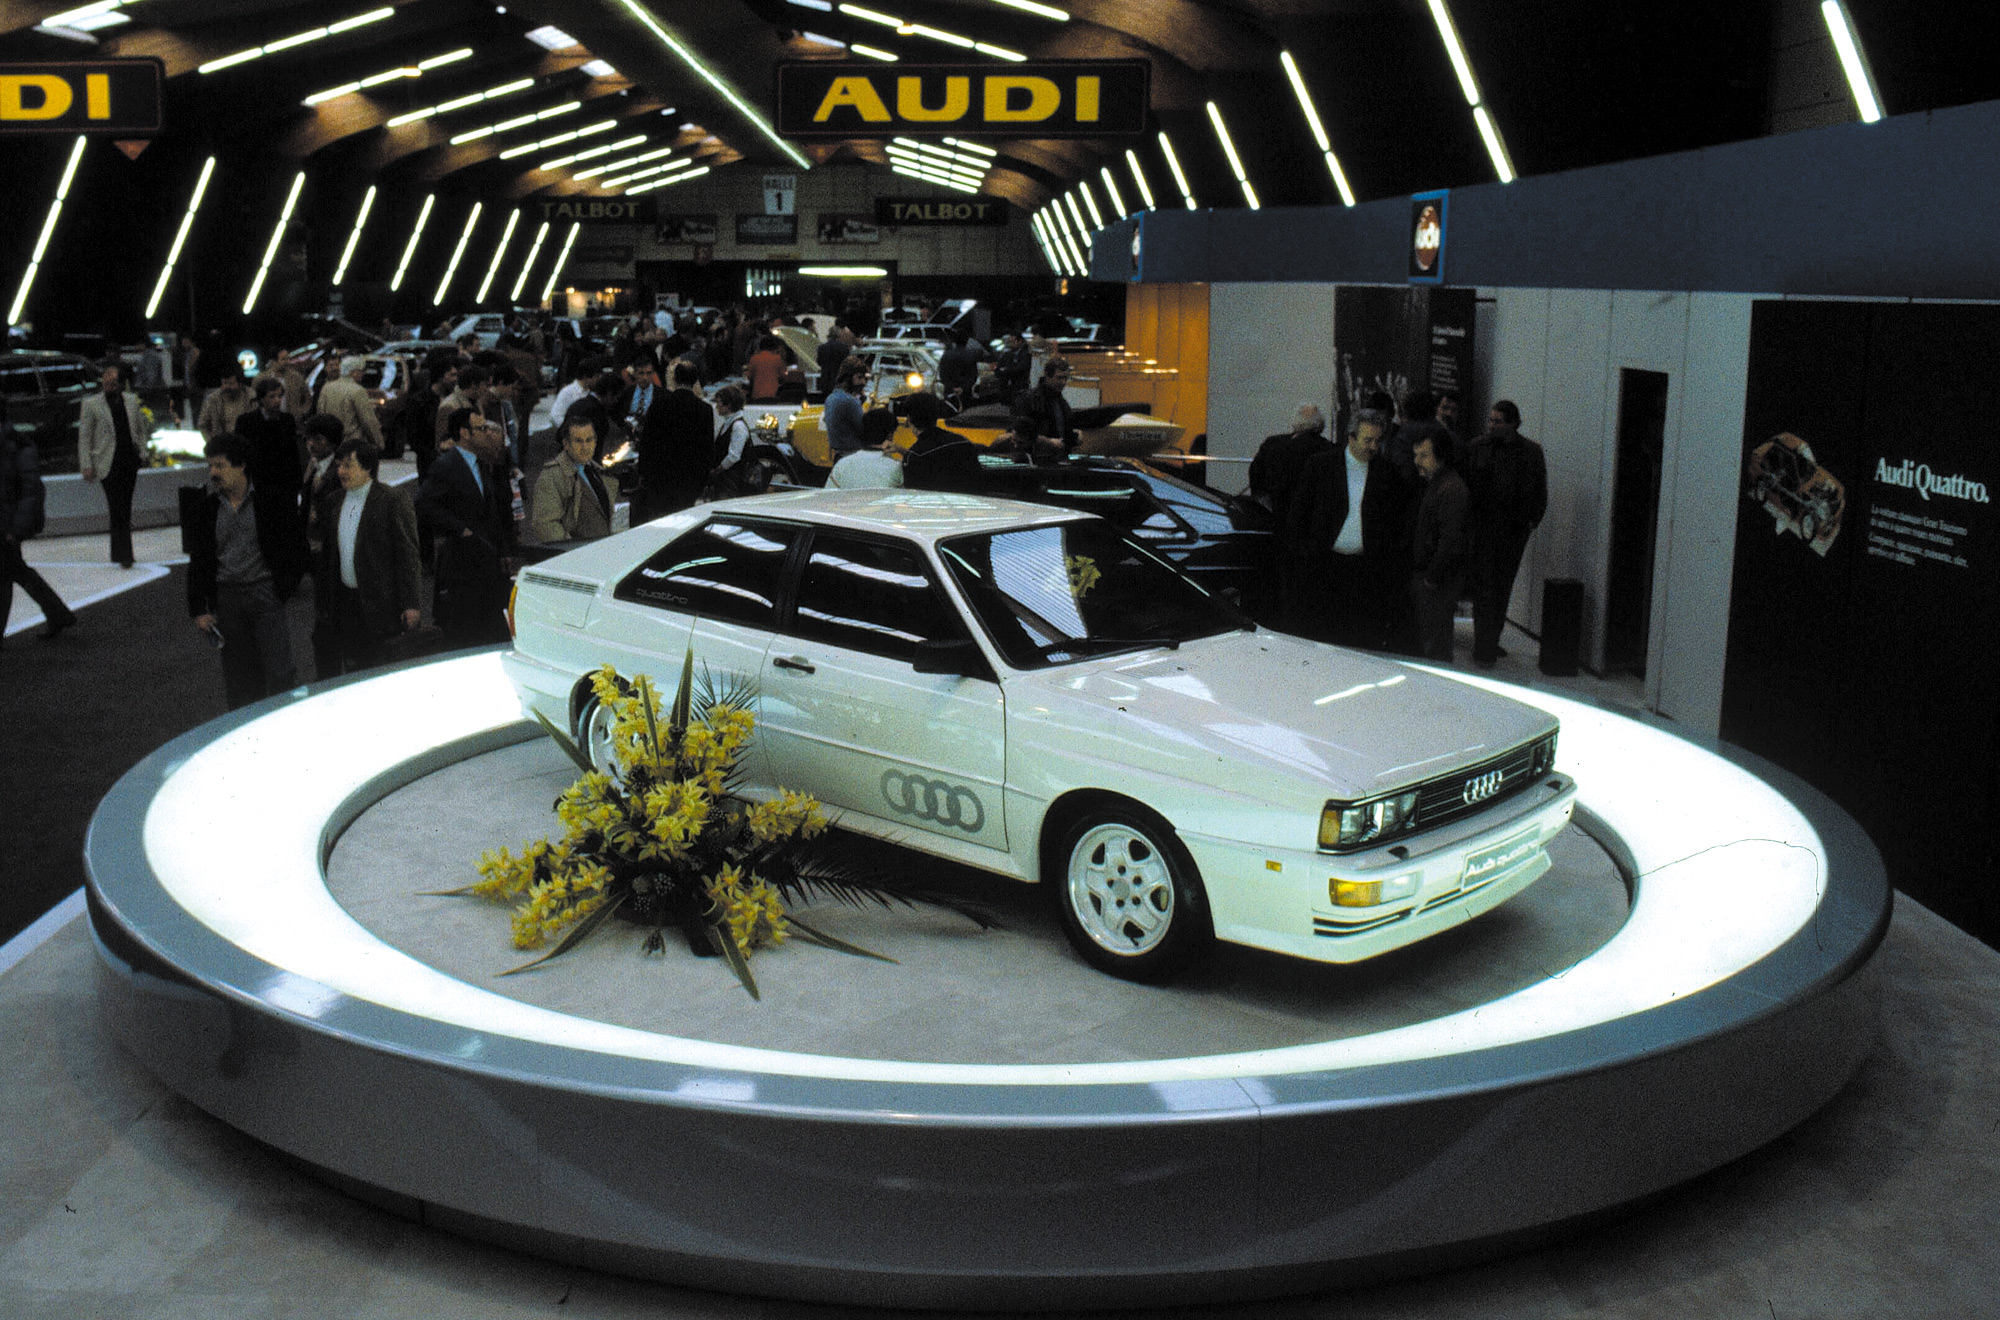 1980 Audi Quattro